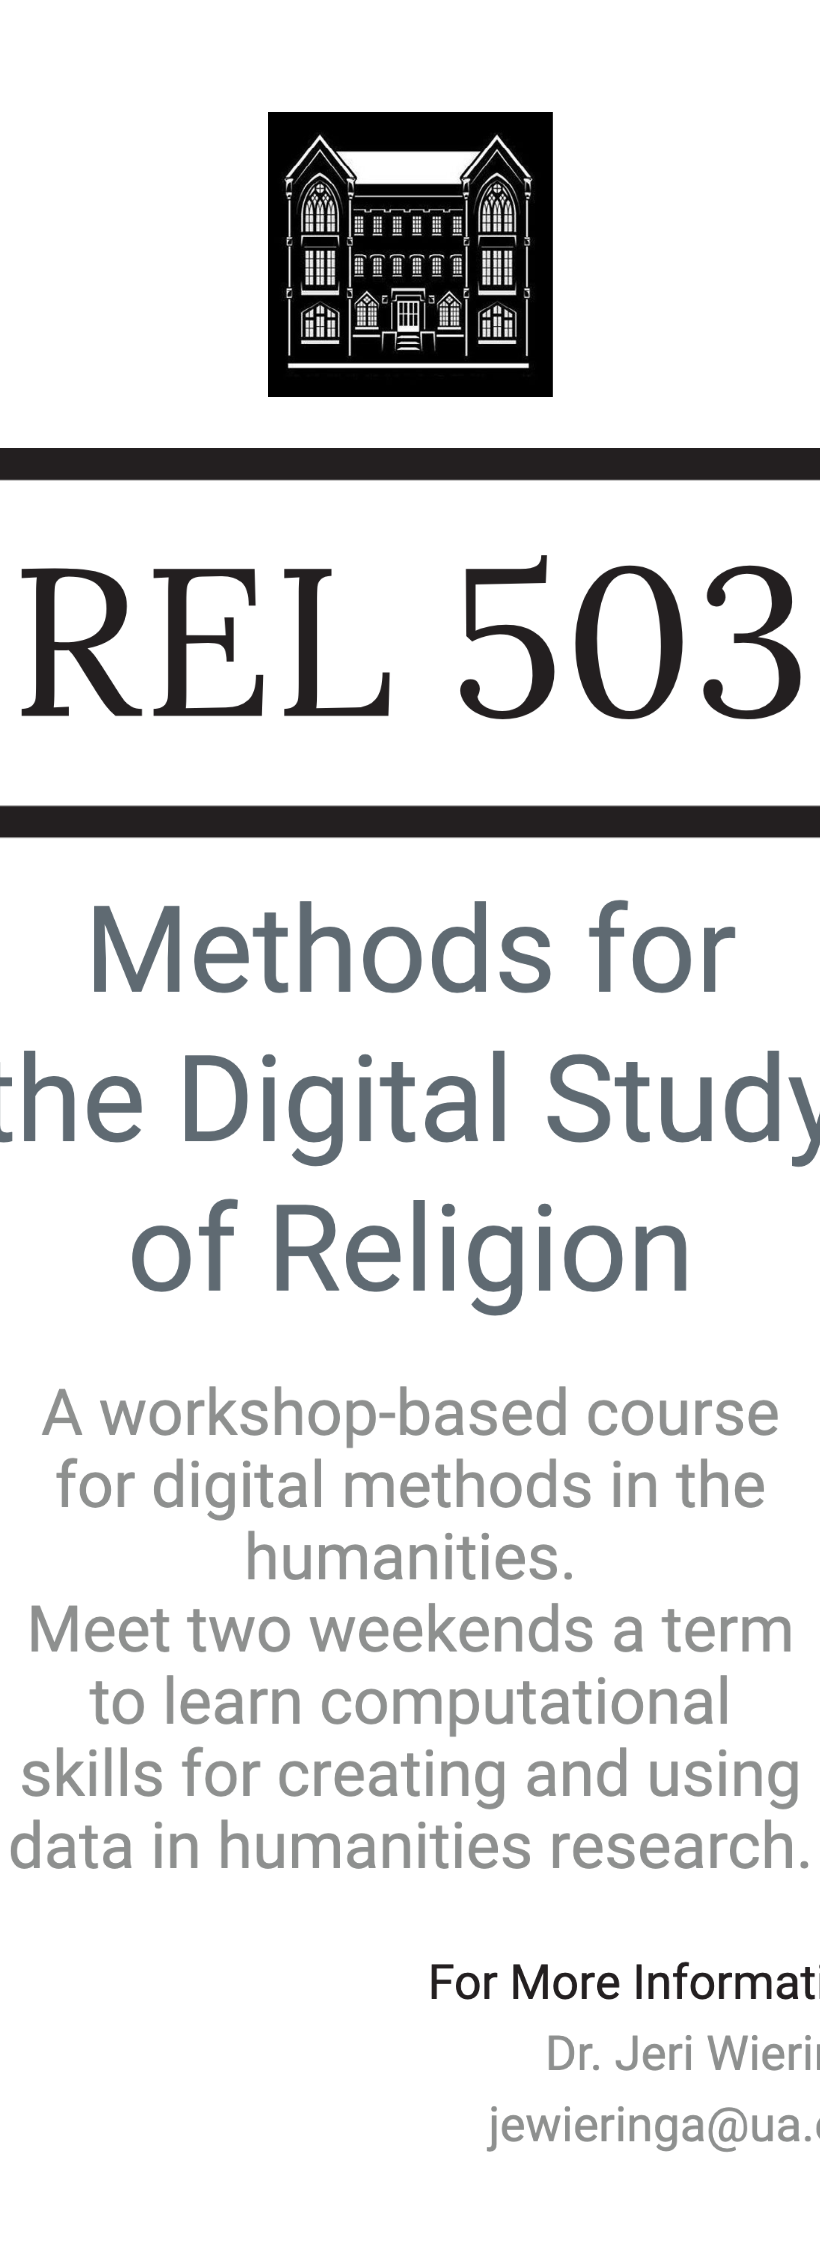 Methods for the Digital Study of Religion Workshop information